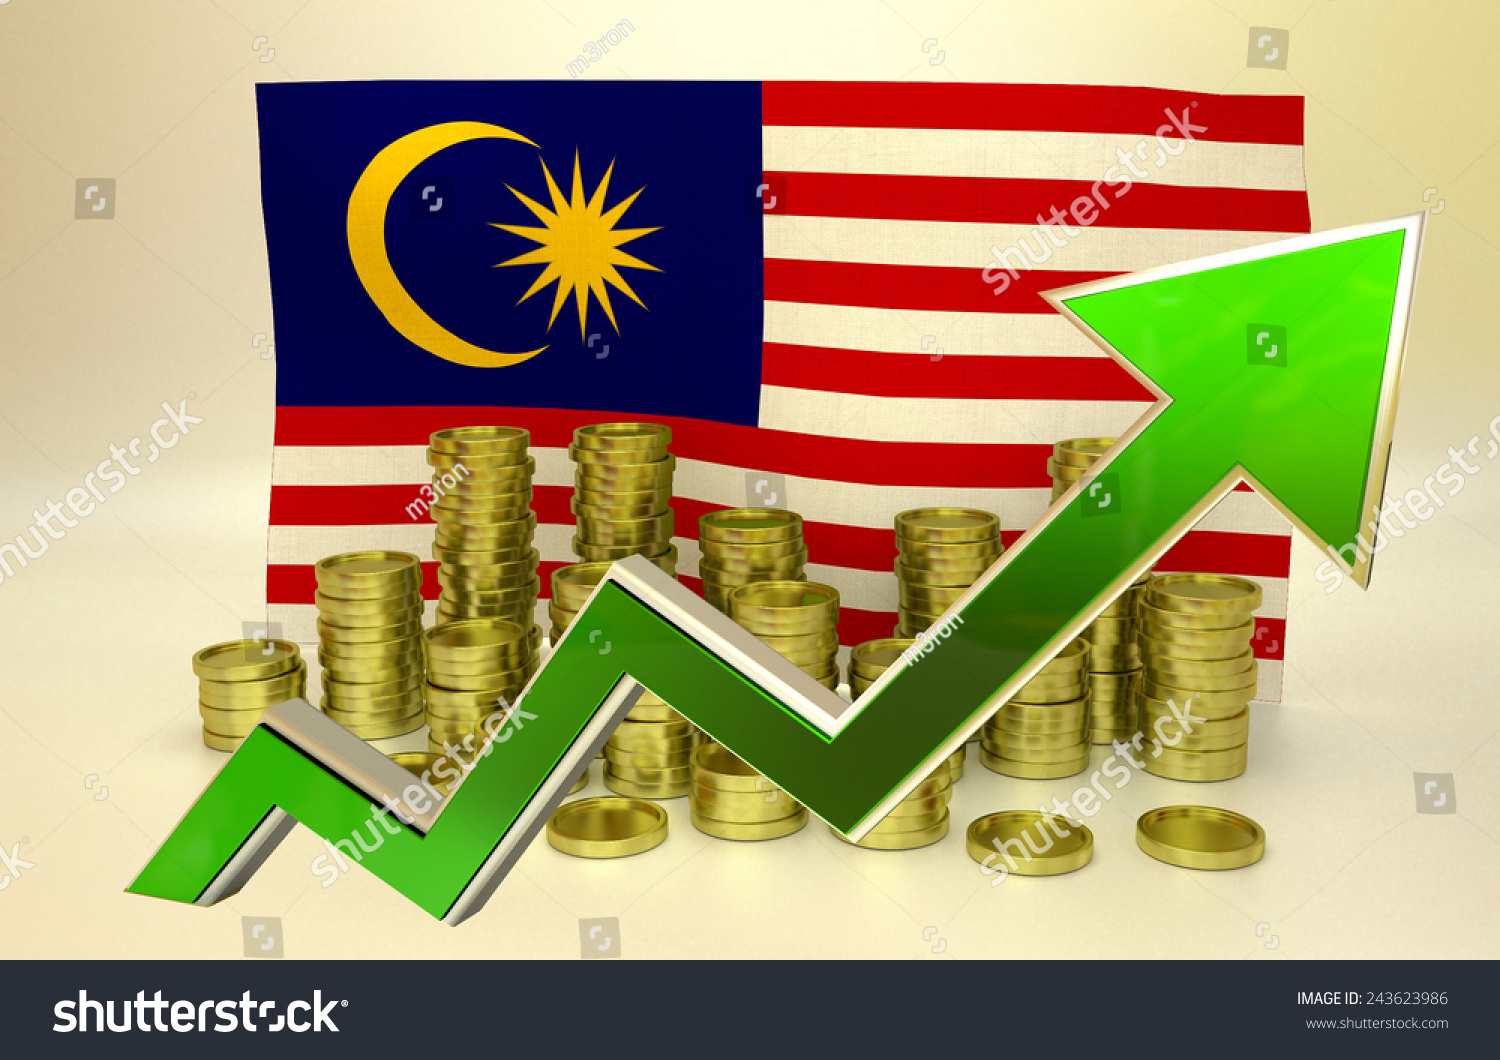 Ввп малайзии. Экономика Малайзии. Экономика Малайзии на современном этапе. Экономический рост Малайзии. Малайзия экономика мировая.